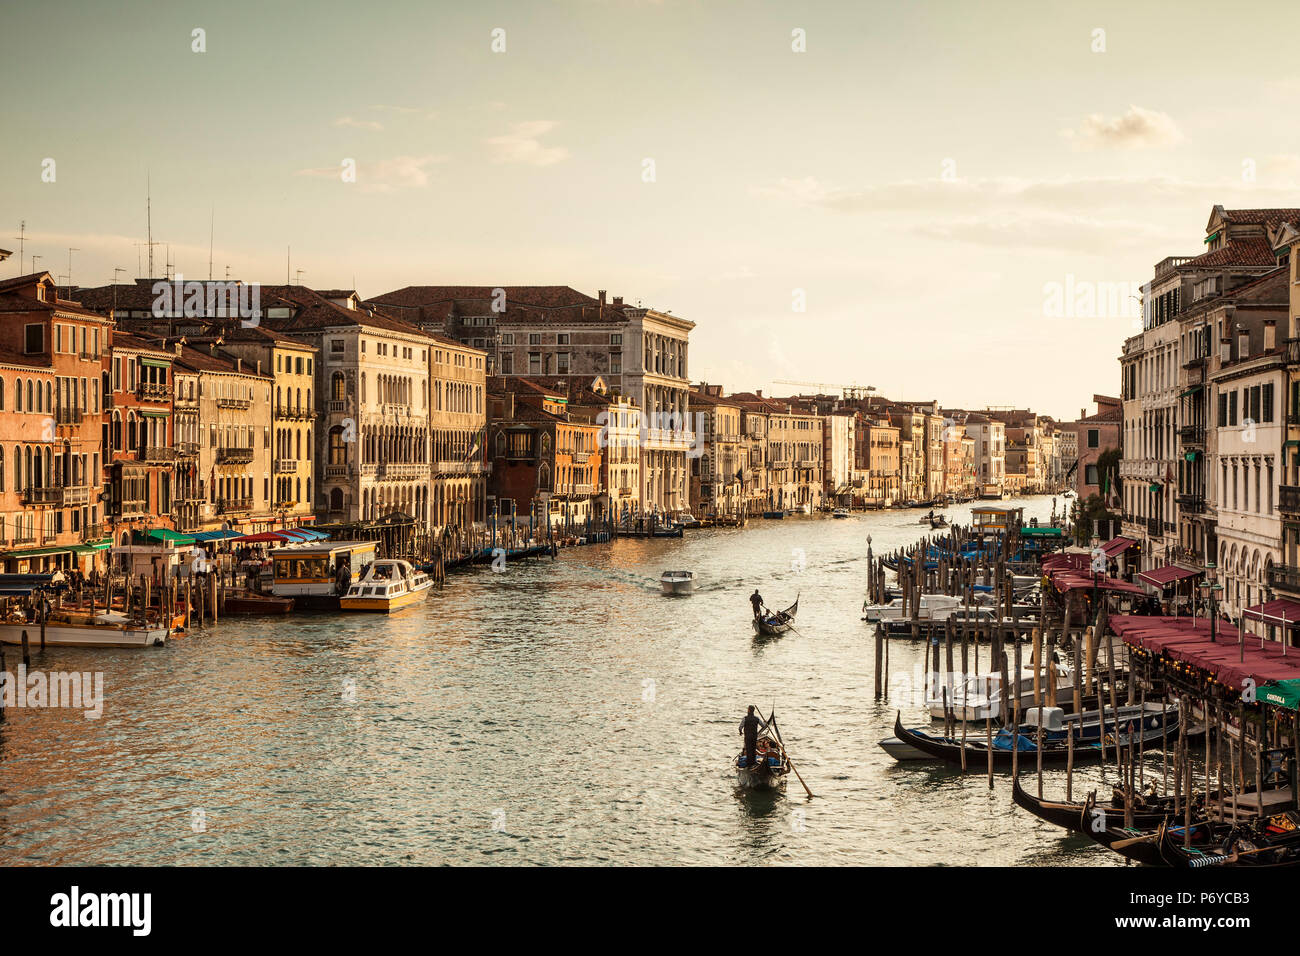 Canal Grande da Rialto, Venezia, Italia Foto Stock